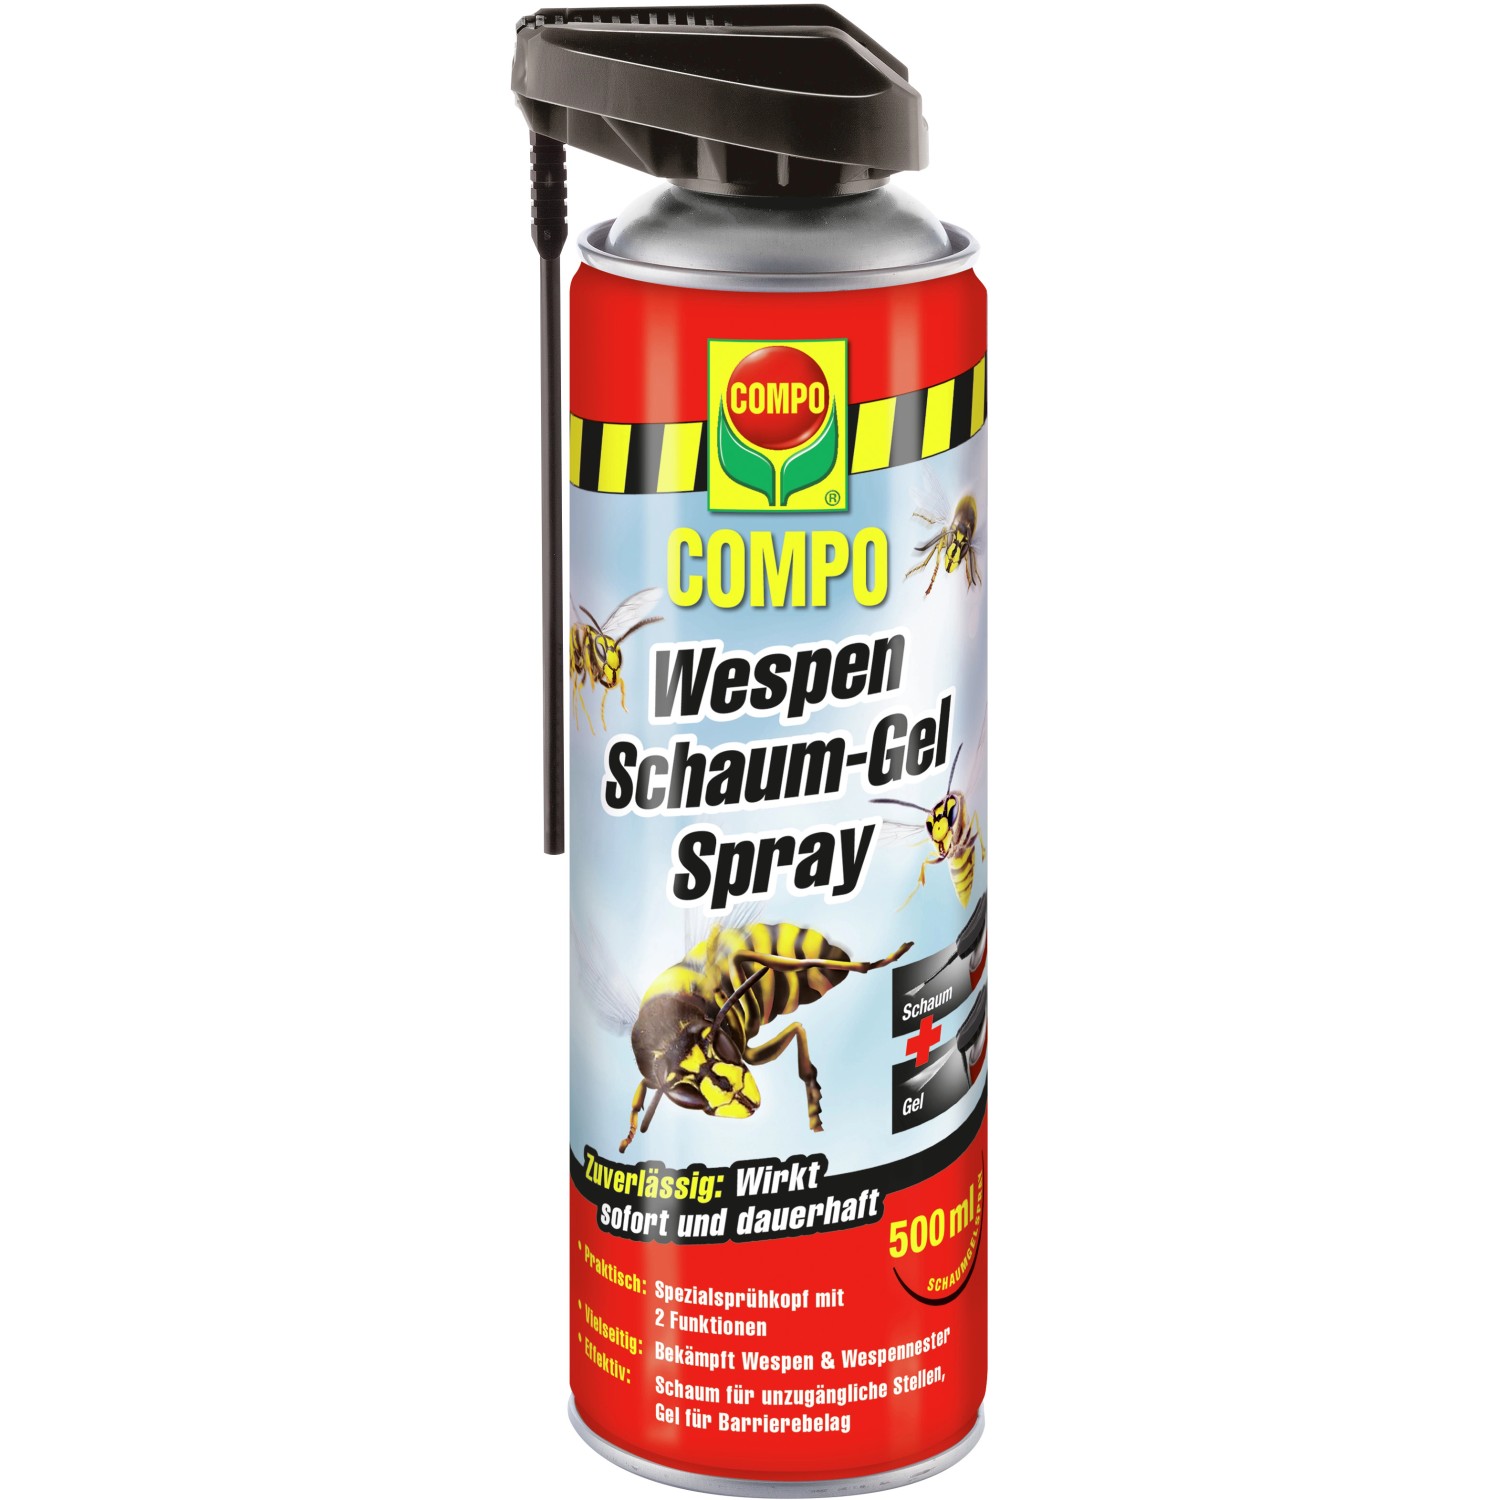 Compo Wespen Schaum-Gel Spray 500 ml